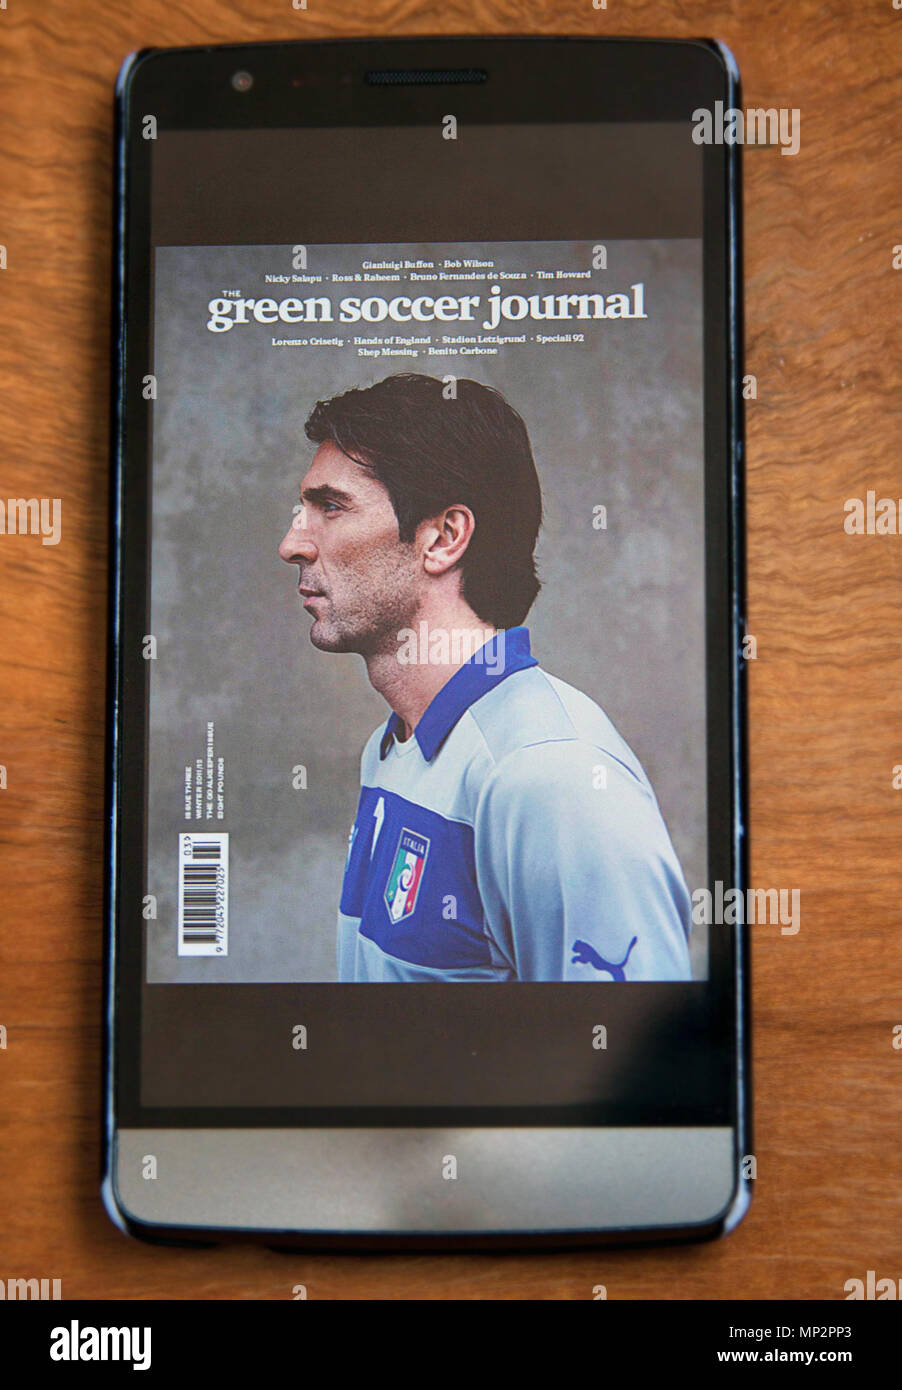 Goalkeeper Gianluigi Buffon on Cover of Green Soccer Journal magazine on Smartphone. Stock Photo